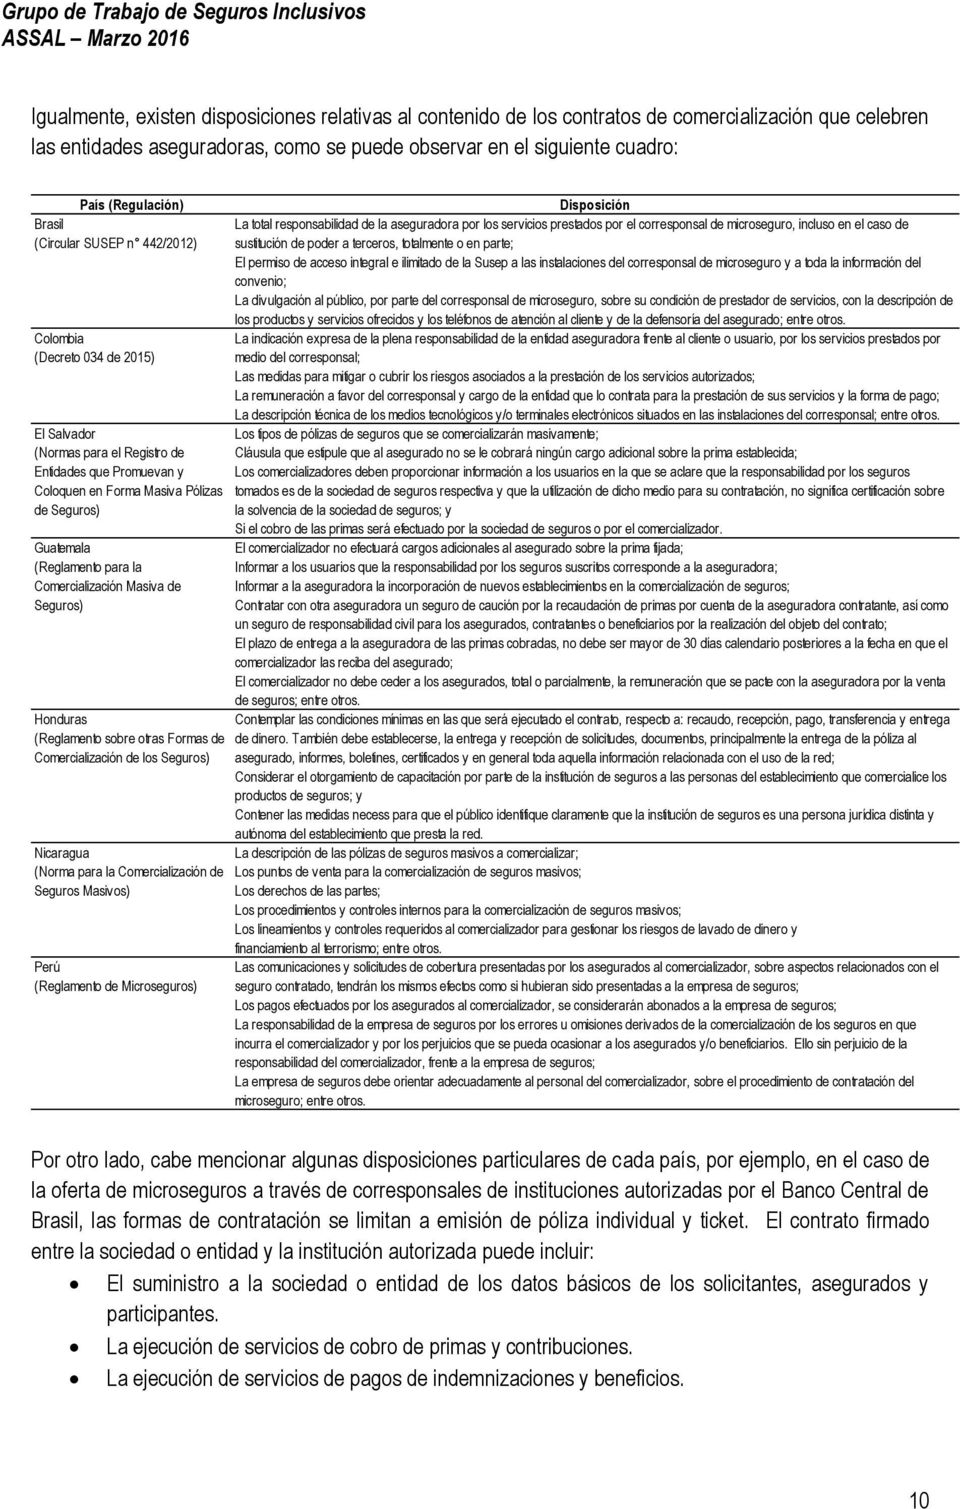 para la Comercialización Masiva de Seguros) Honduras (Reglamento sobre otras Formas de Comercialización de los Seguros) Nicaragua (Norma para la Comercialización de Seguros Masivos) Perú (Reglamento